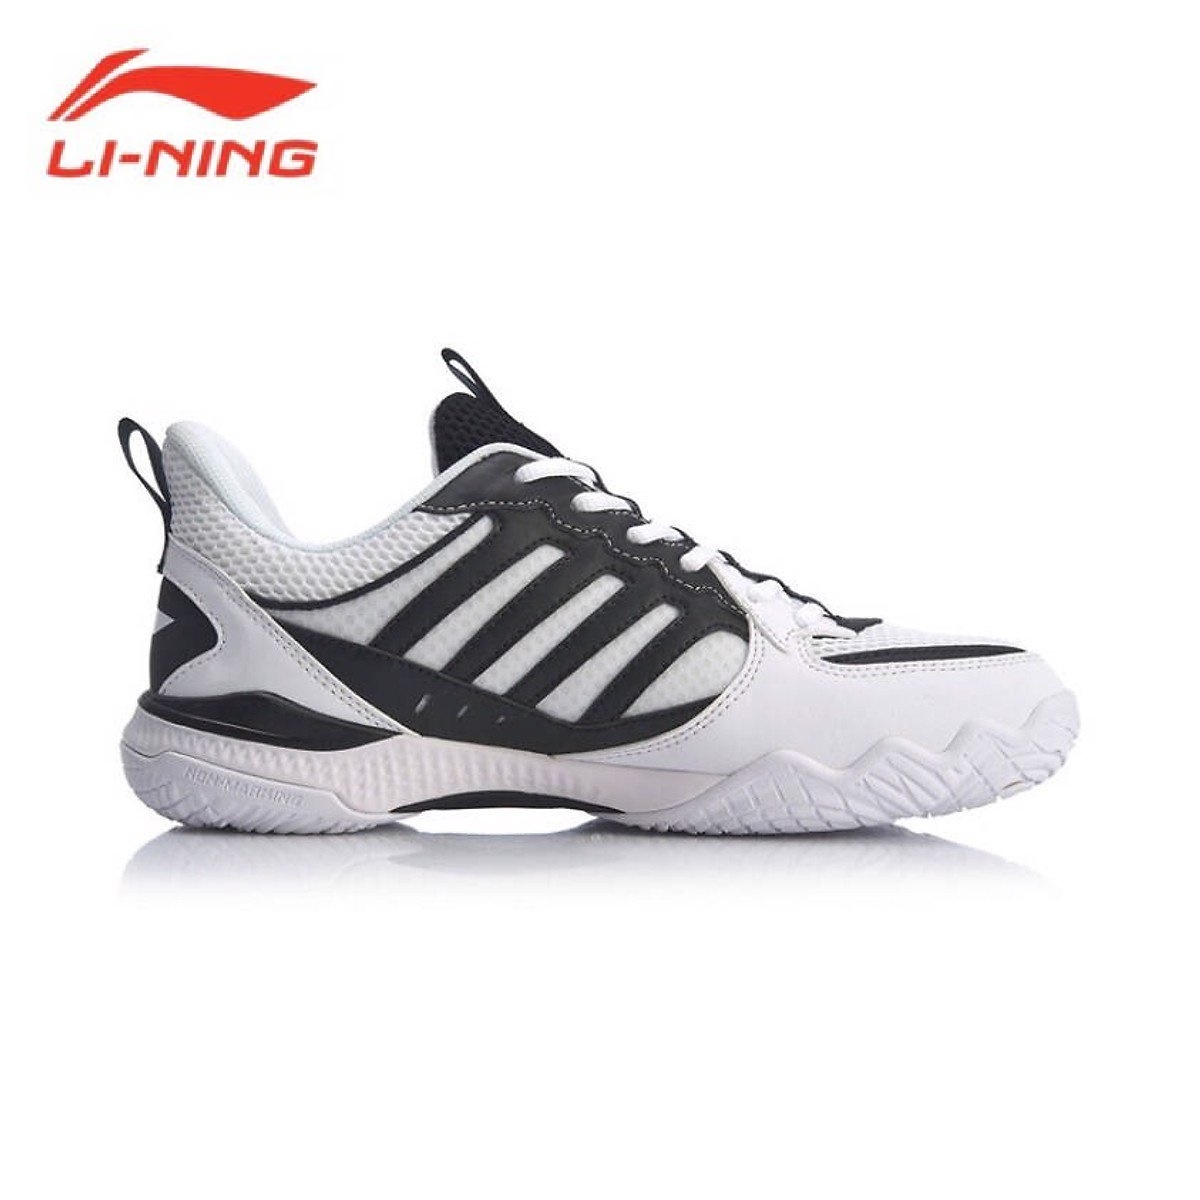 Giày cầu lông Lining AYTQ019-1 chính hãng dành cho nam